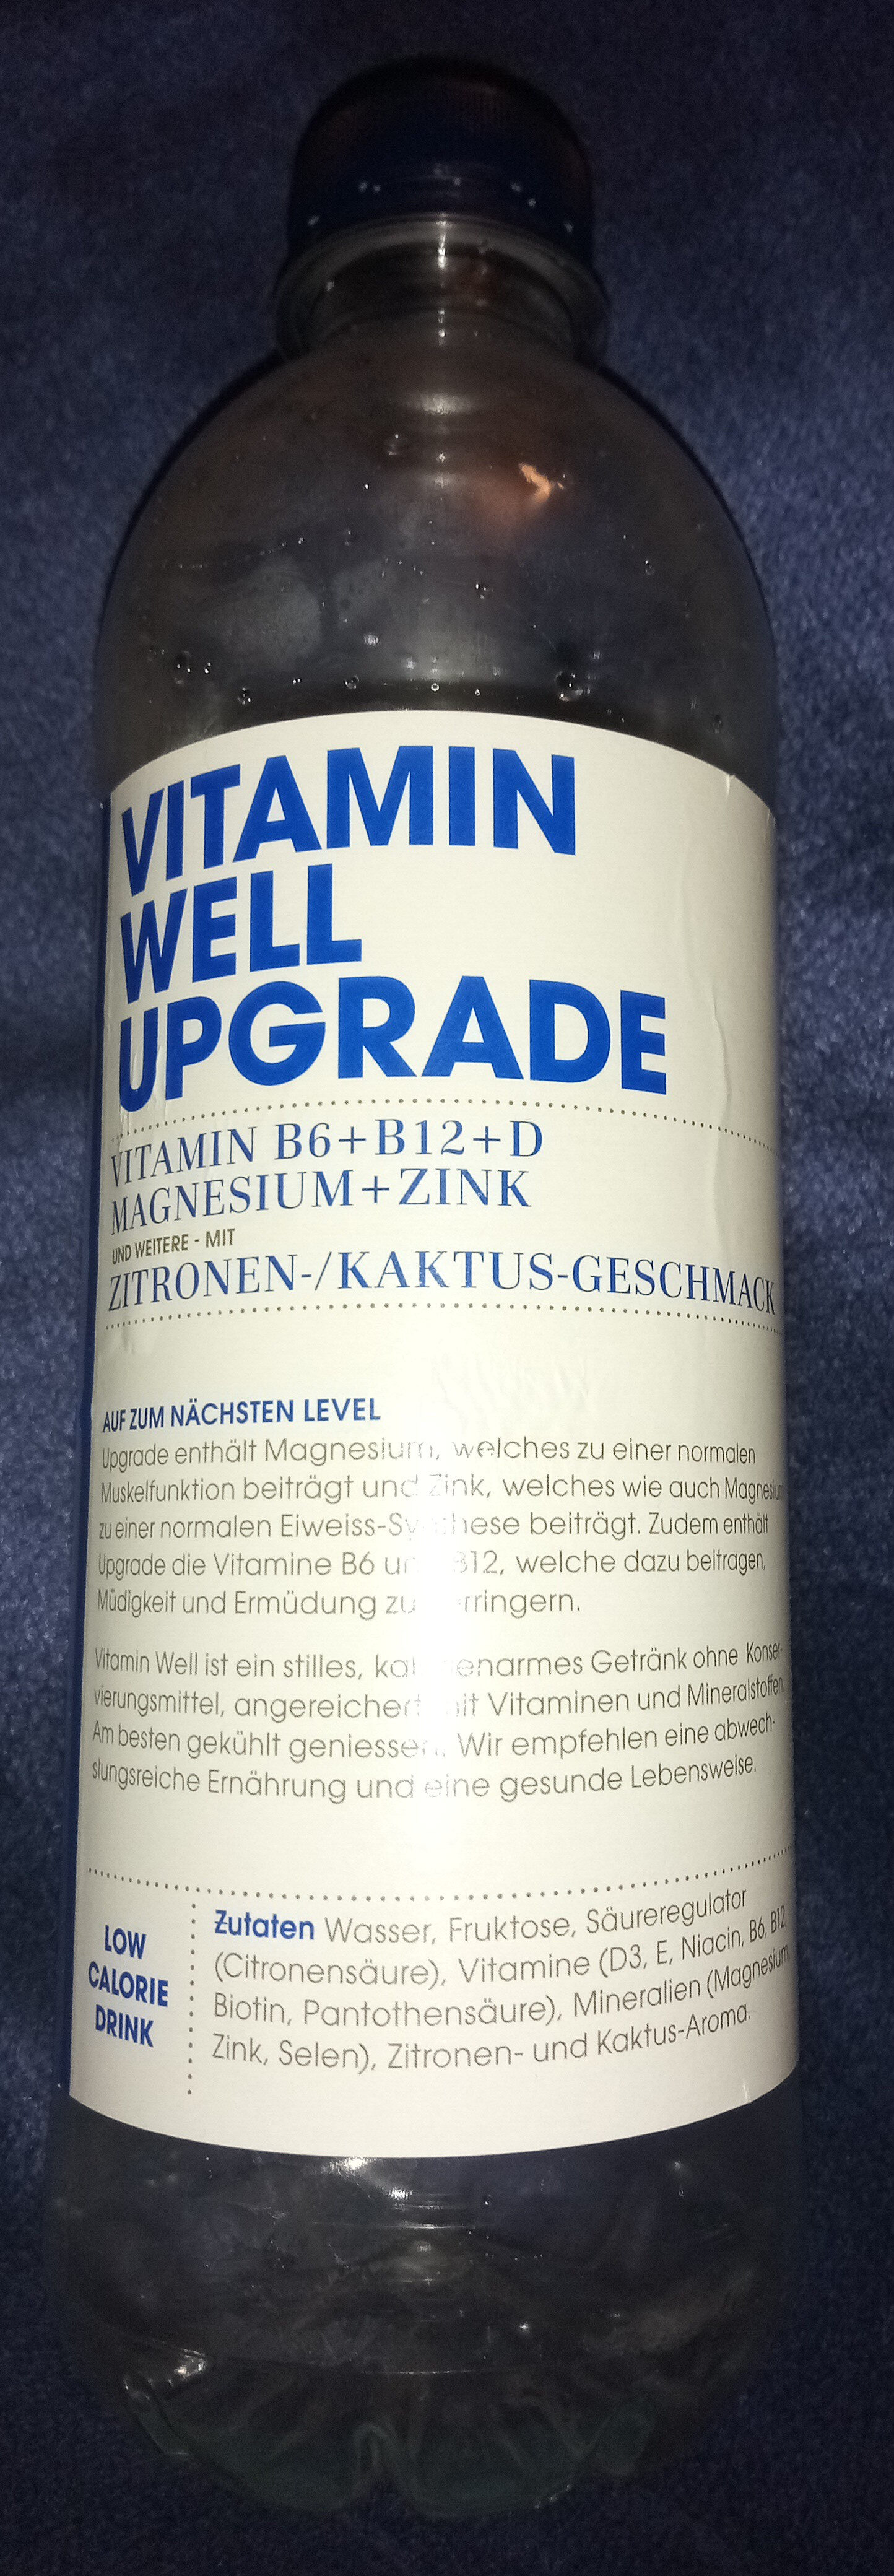 Vitamin well upgrade - Prodotto - de